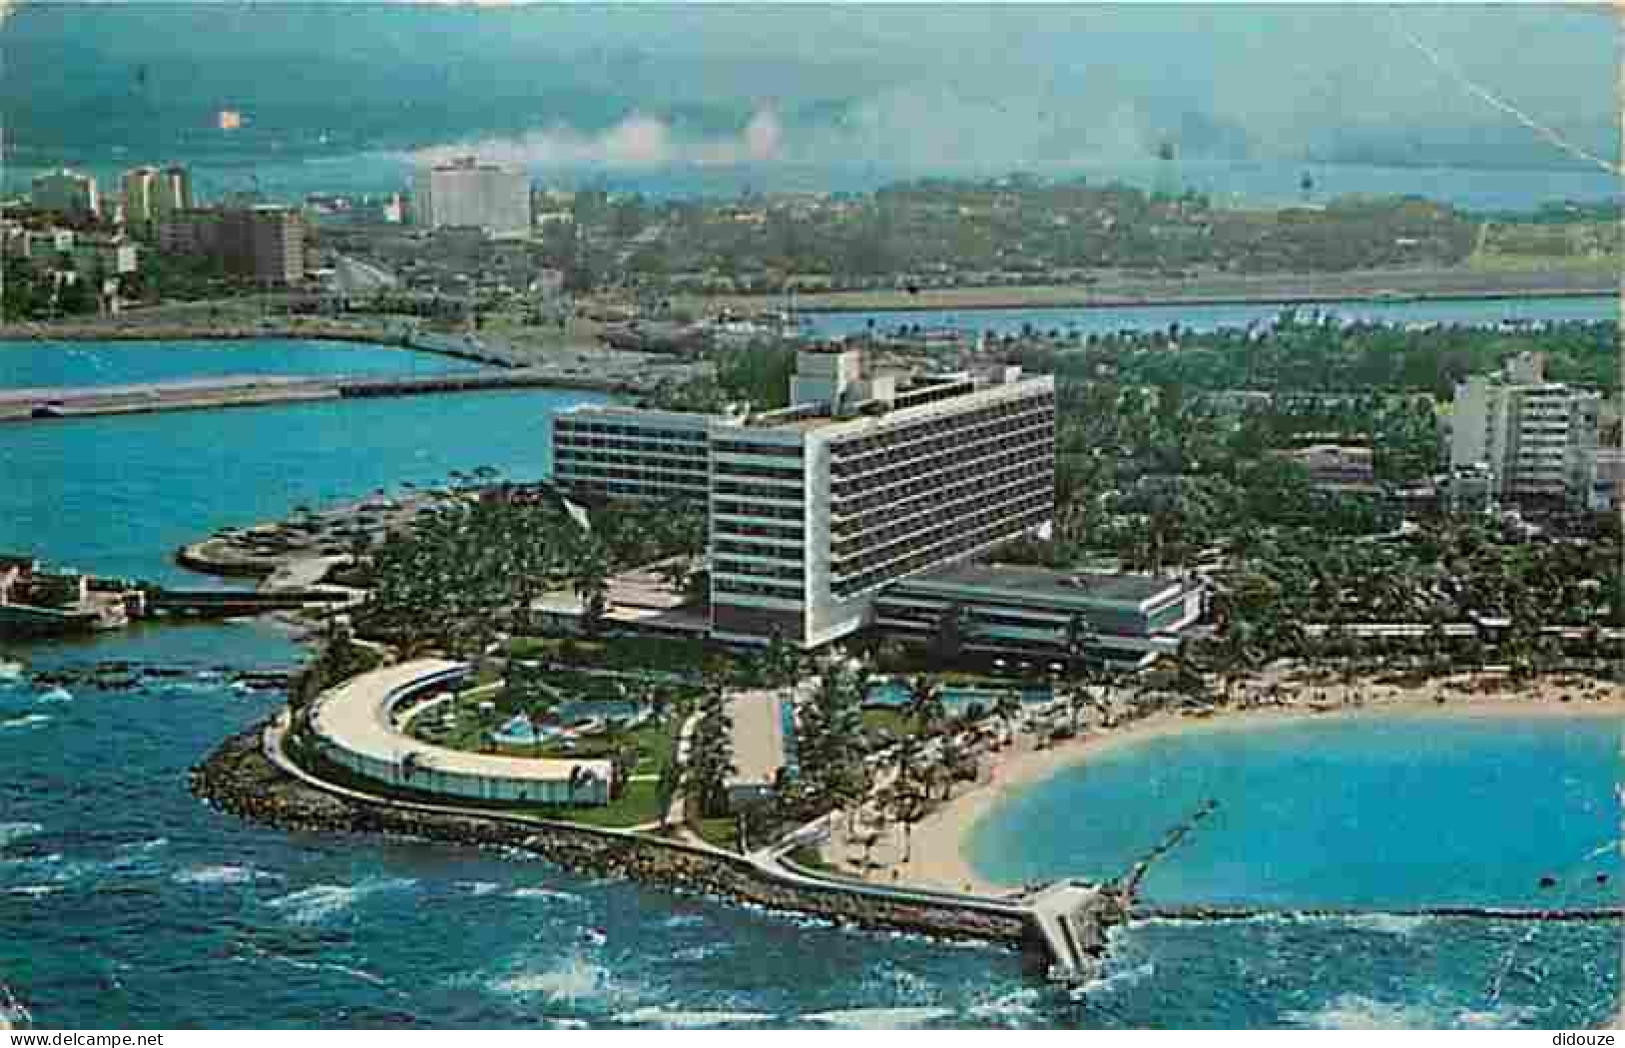 Puerto Rico - San Juan - The Caribe Hilton - CPM - Voir Scans Recto-Verso - Puerto Rico